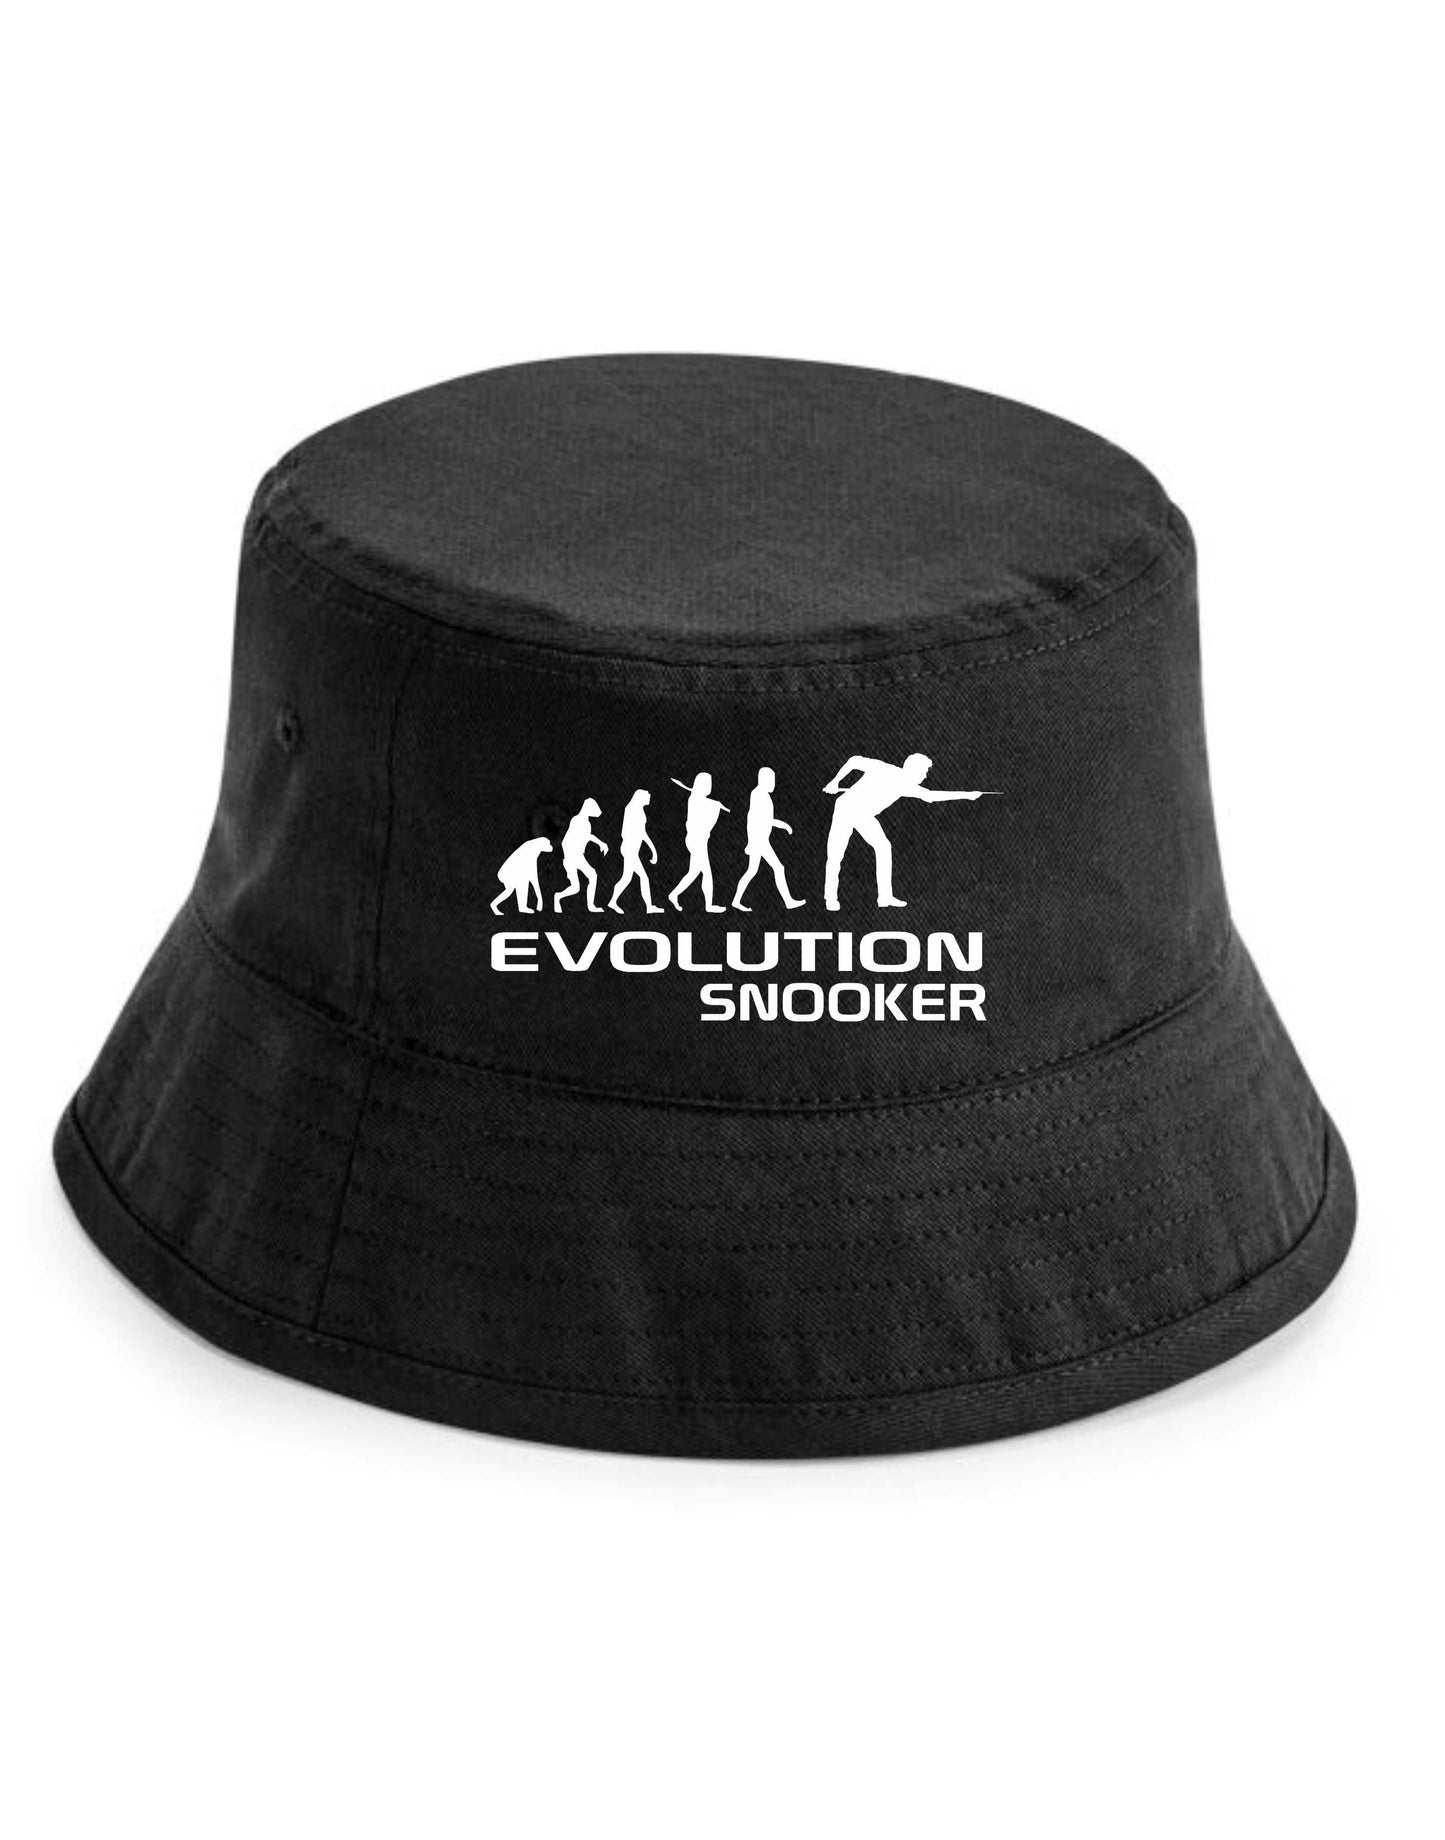 Evolution Of Snooker Bucket Hat Sports Hobbies Gift For Men & Ladies